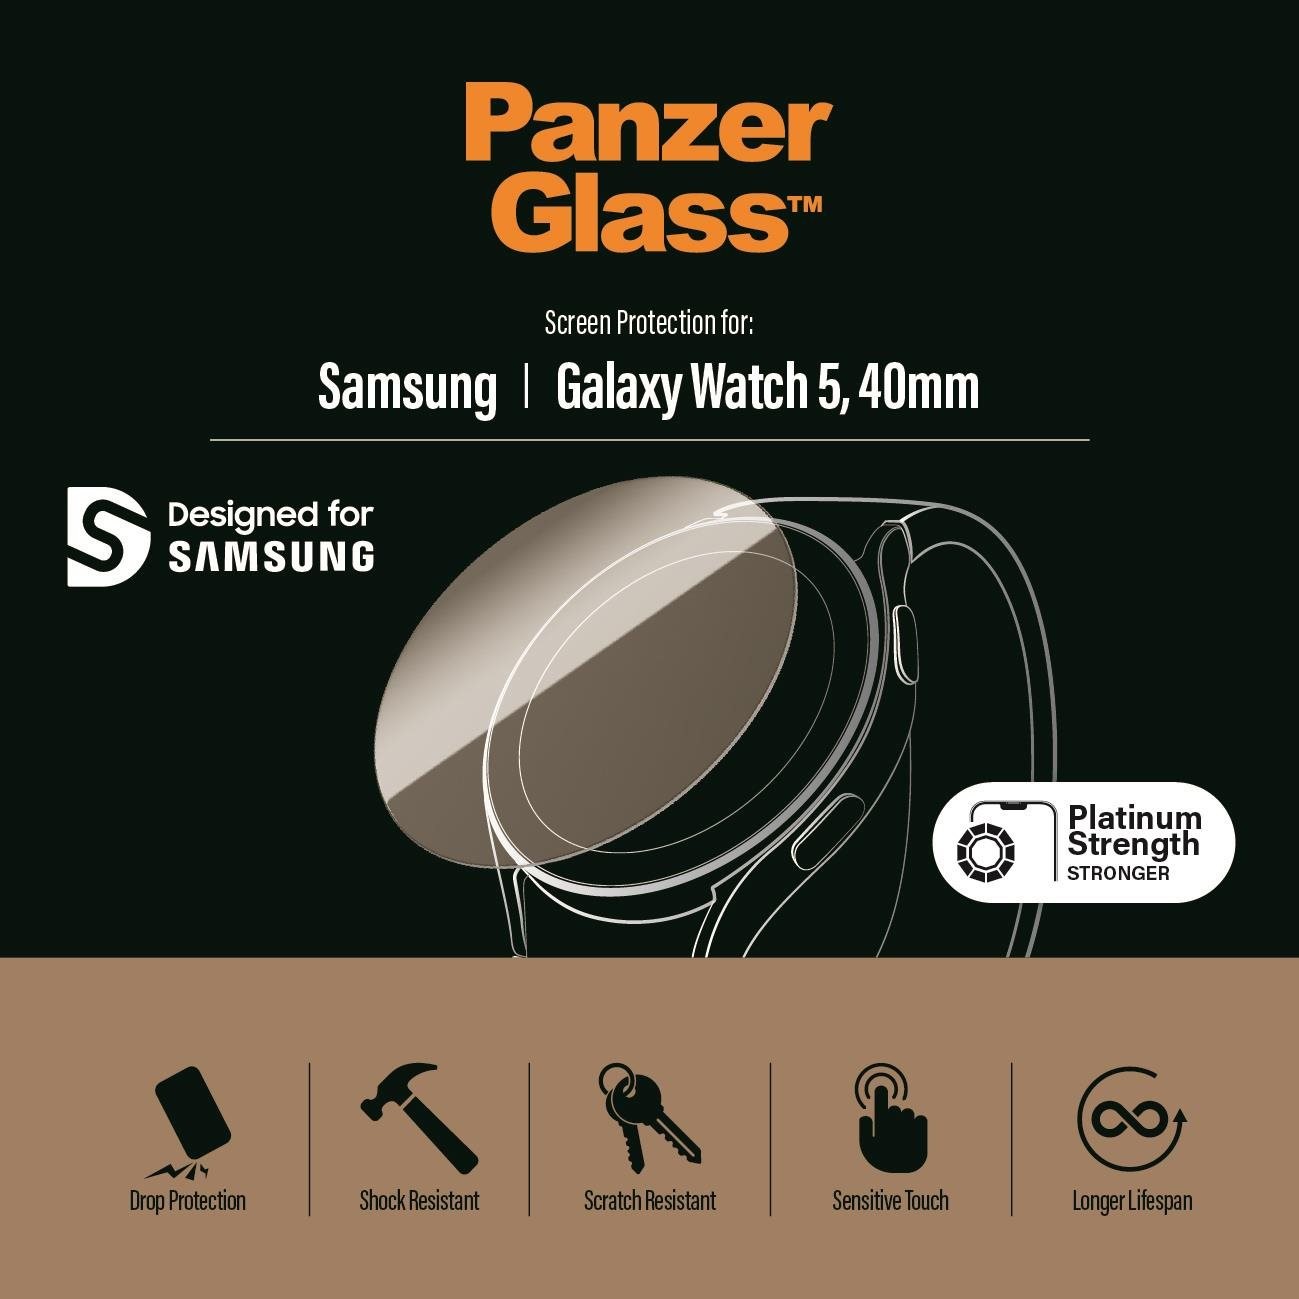 Üvegfólia PanzerGlass 40 mm-es Samsung Galaxy Watch 5 okosórához